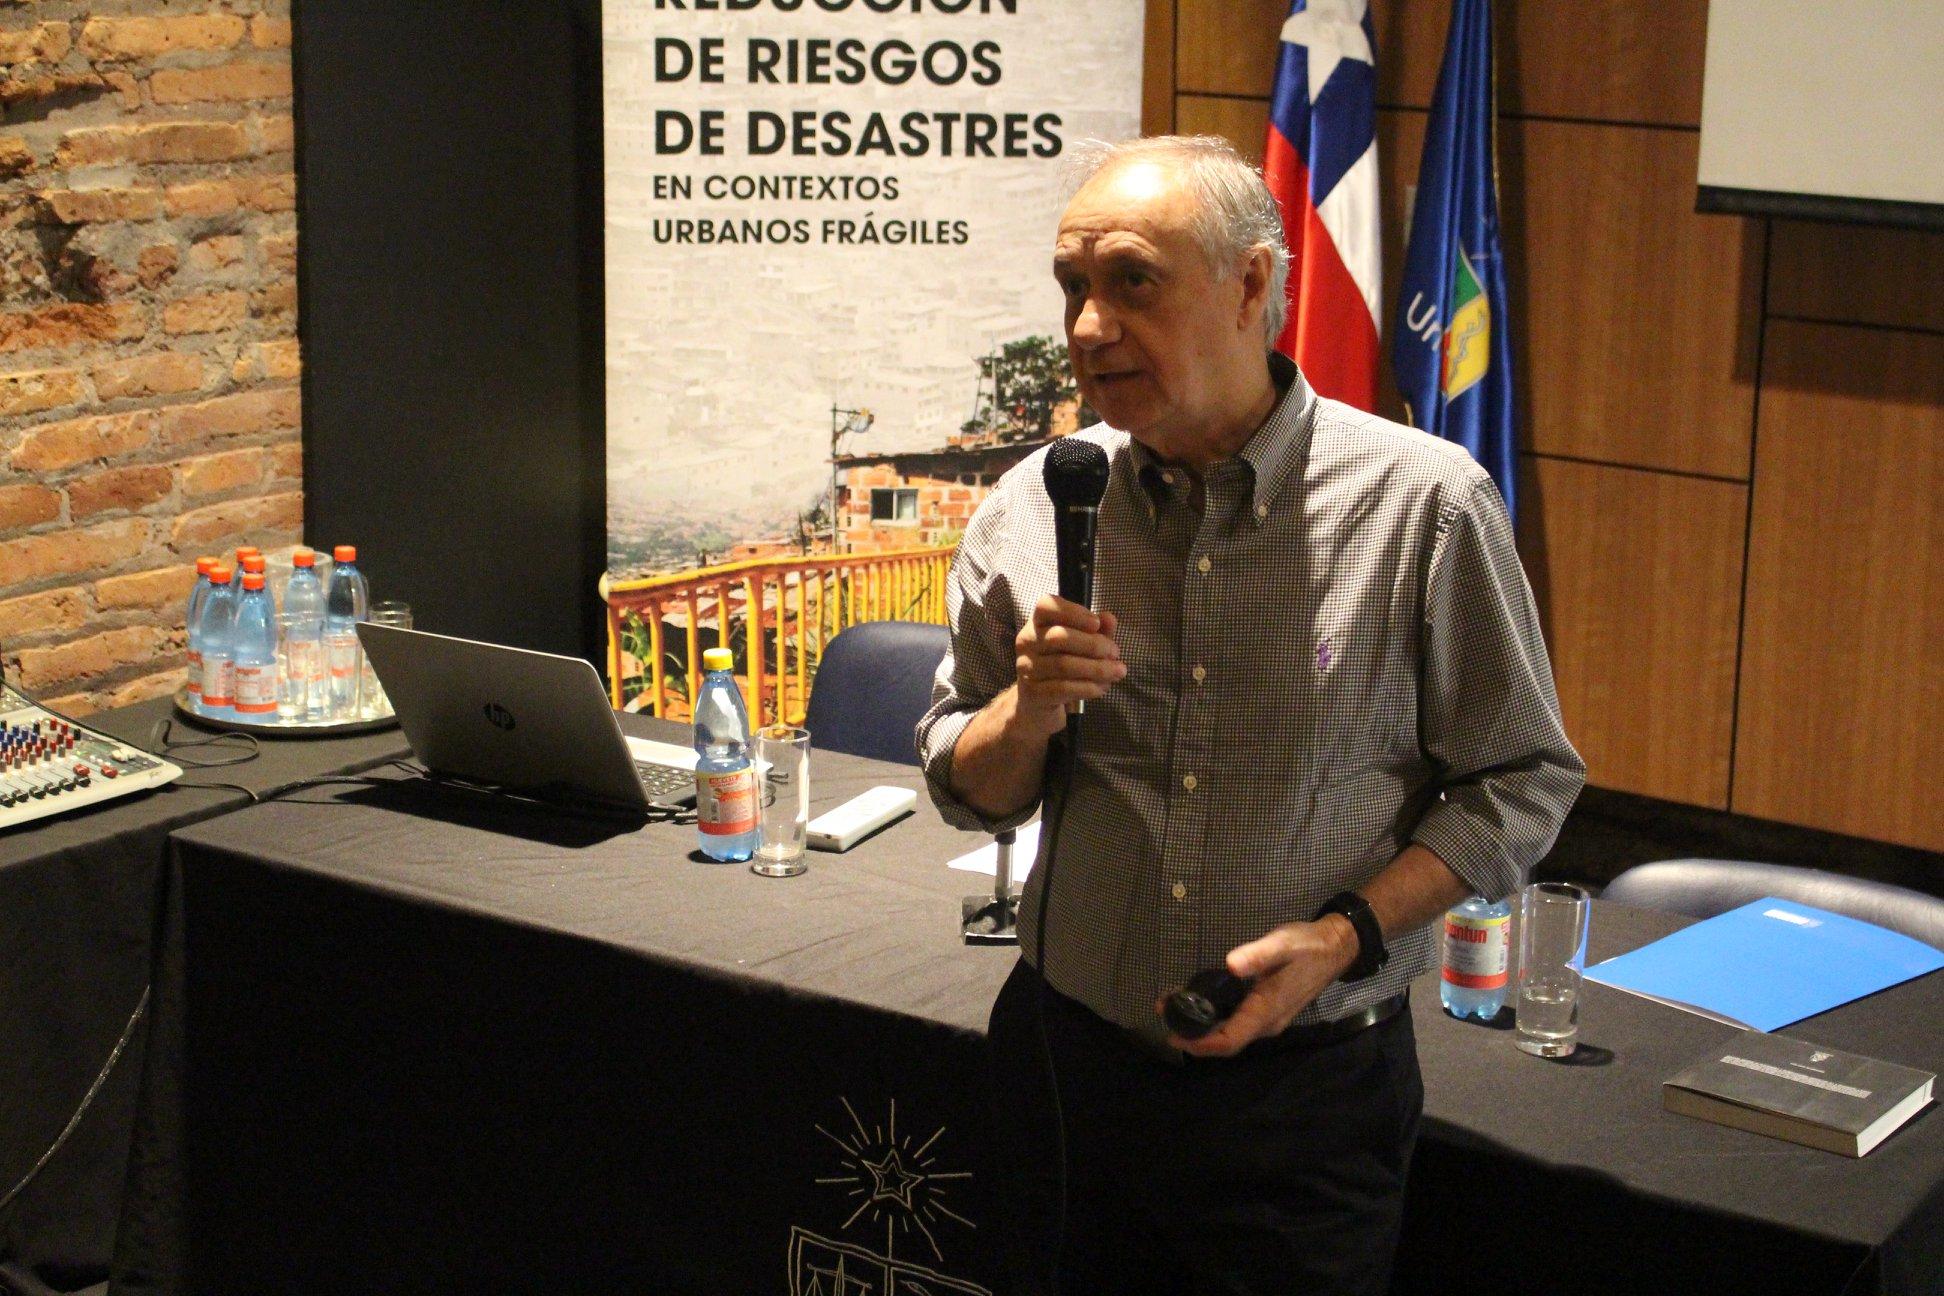 El Decano Manuel Amaya fue el encargado de abrir las presentaciones con su experiencia en la reconstrucción tras el terremoto de 2010.